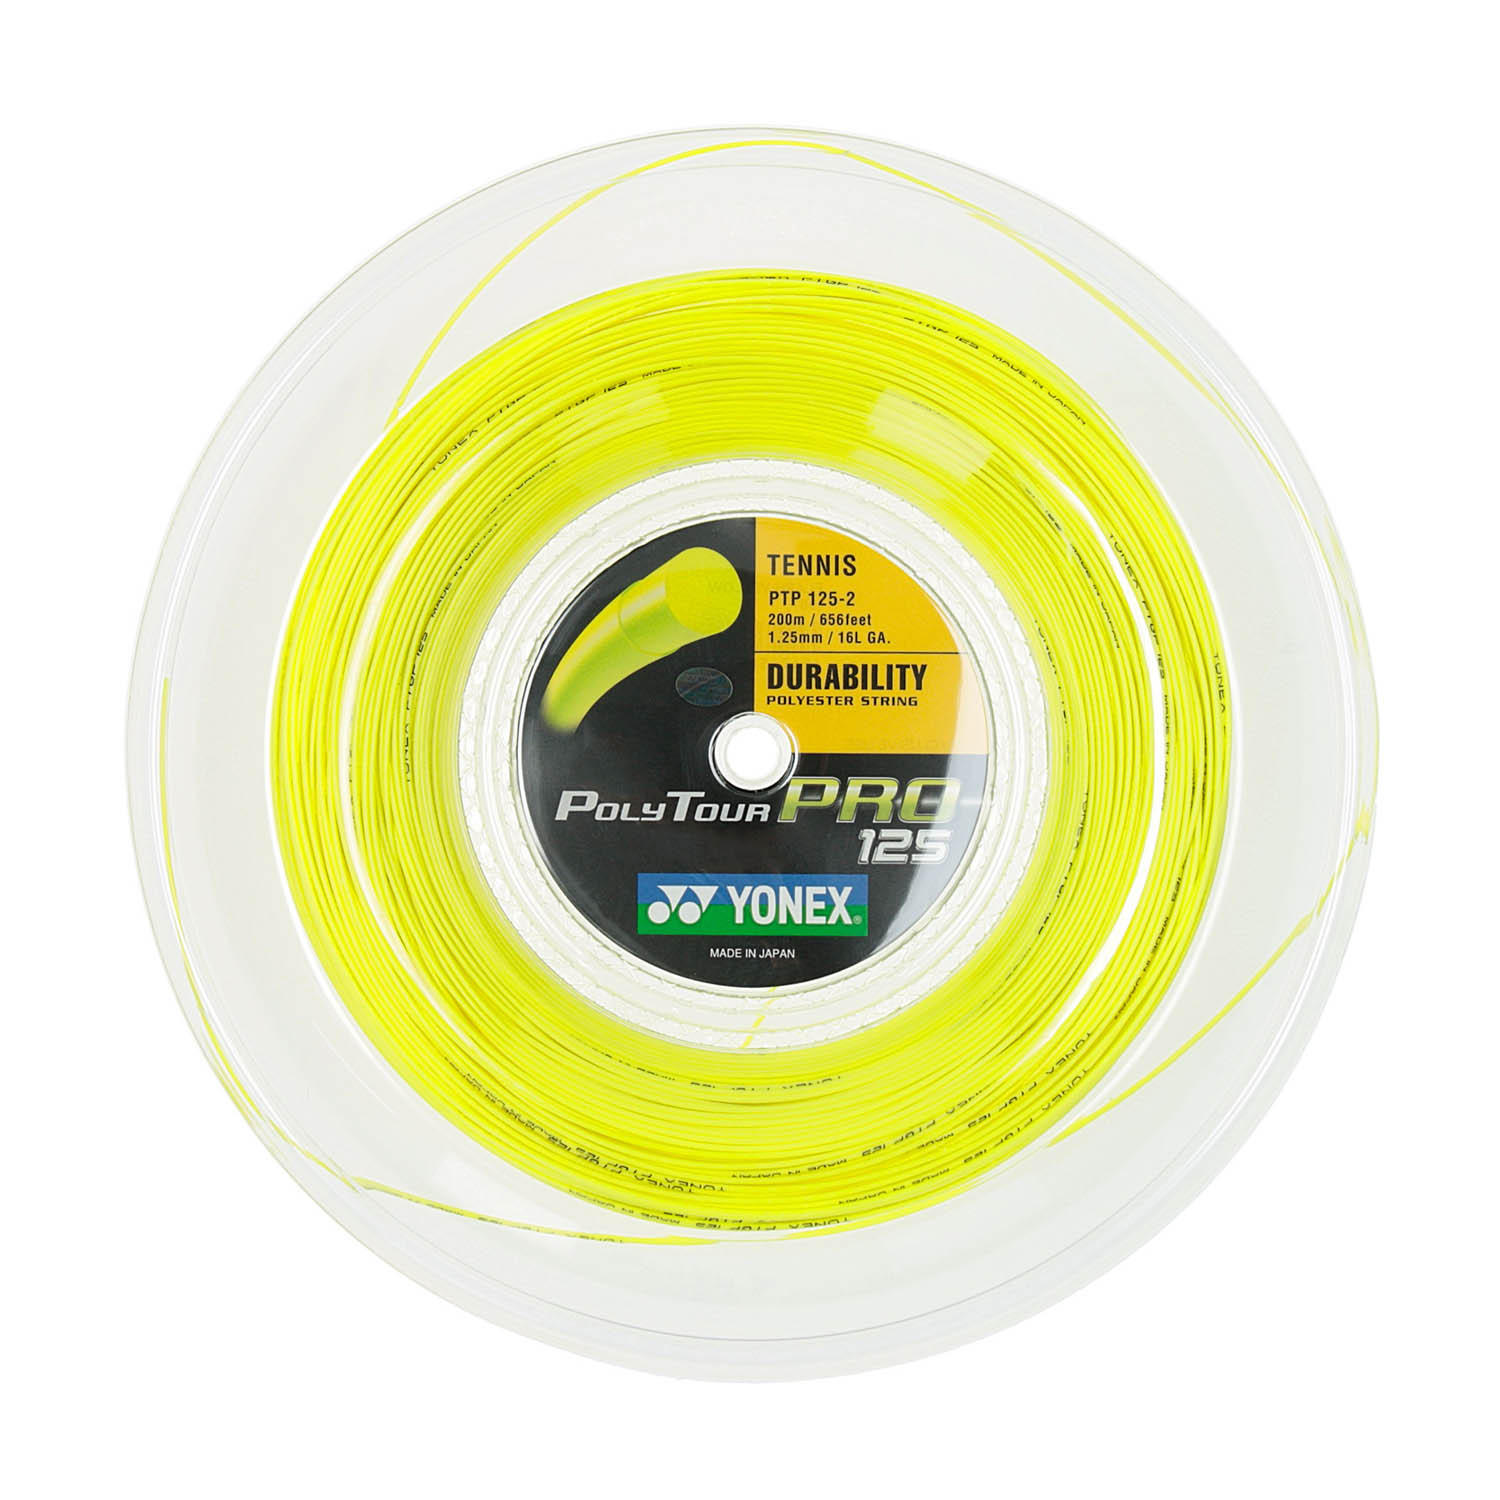 YONEX POLYTOUR PRO 125 1.25mm 200m 16L Tennis String Yellow Reel PTP125-2 